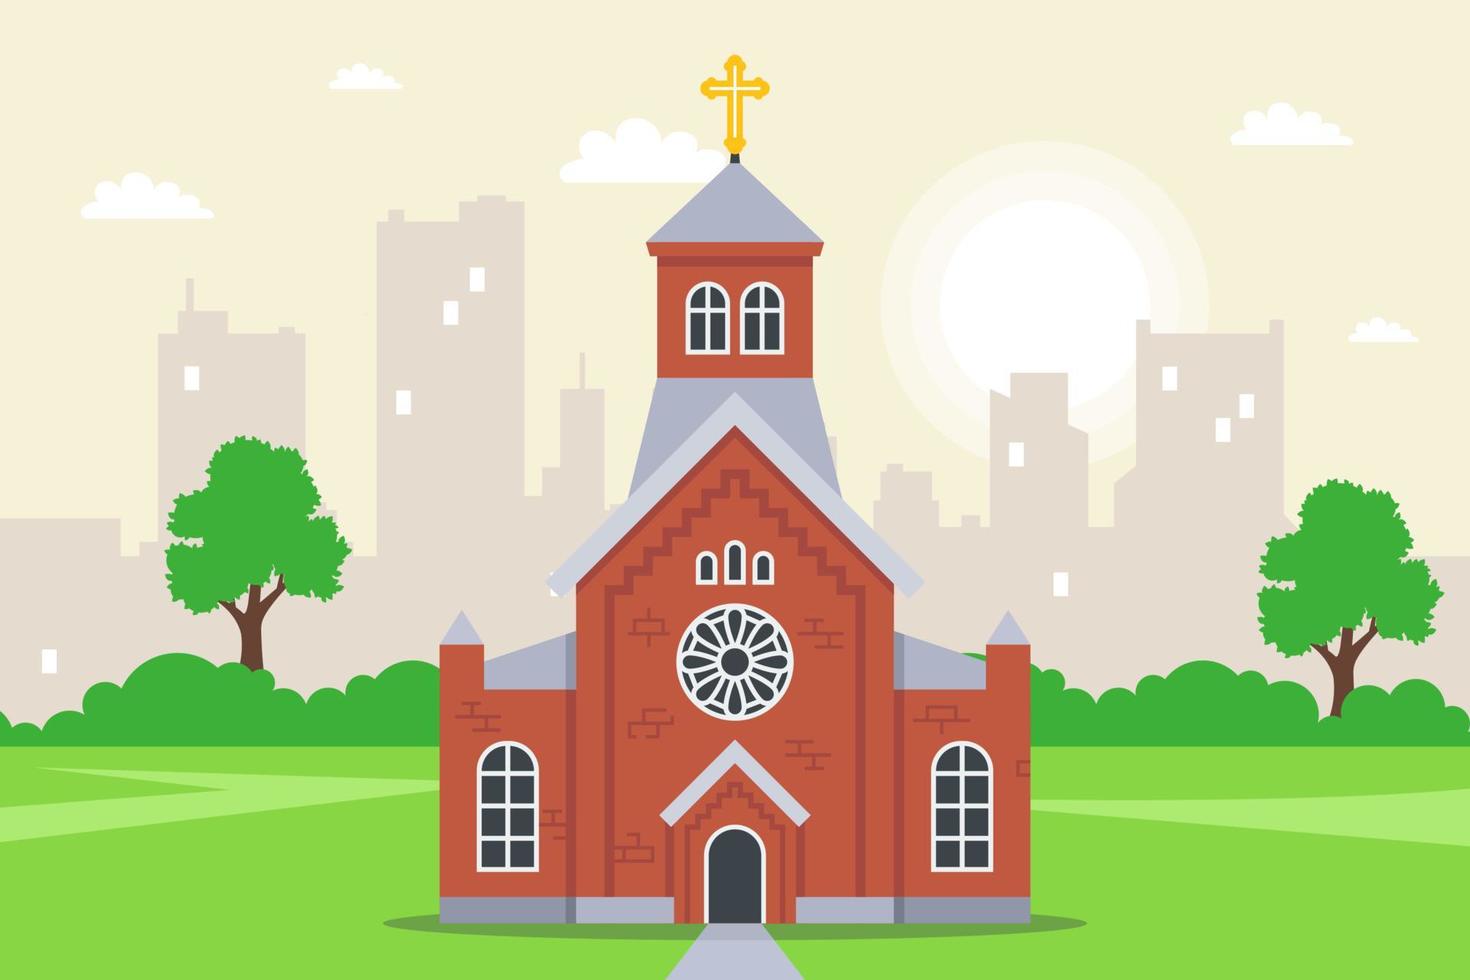 röd tegel kristen kyrka. Fasad av en religiös byggnad. platt vektor illustration.